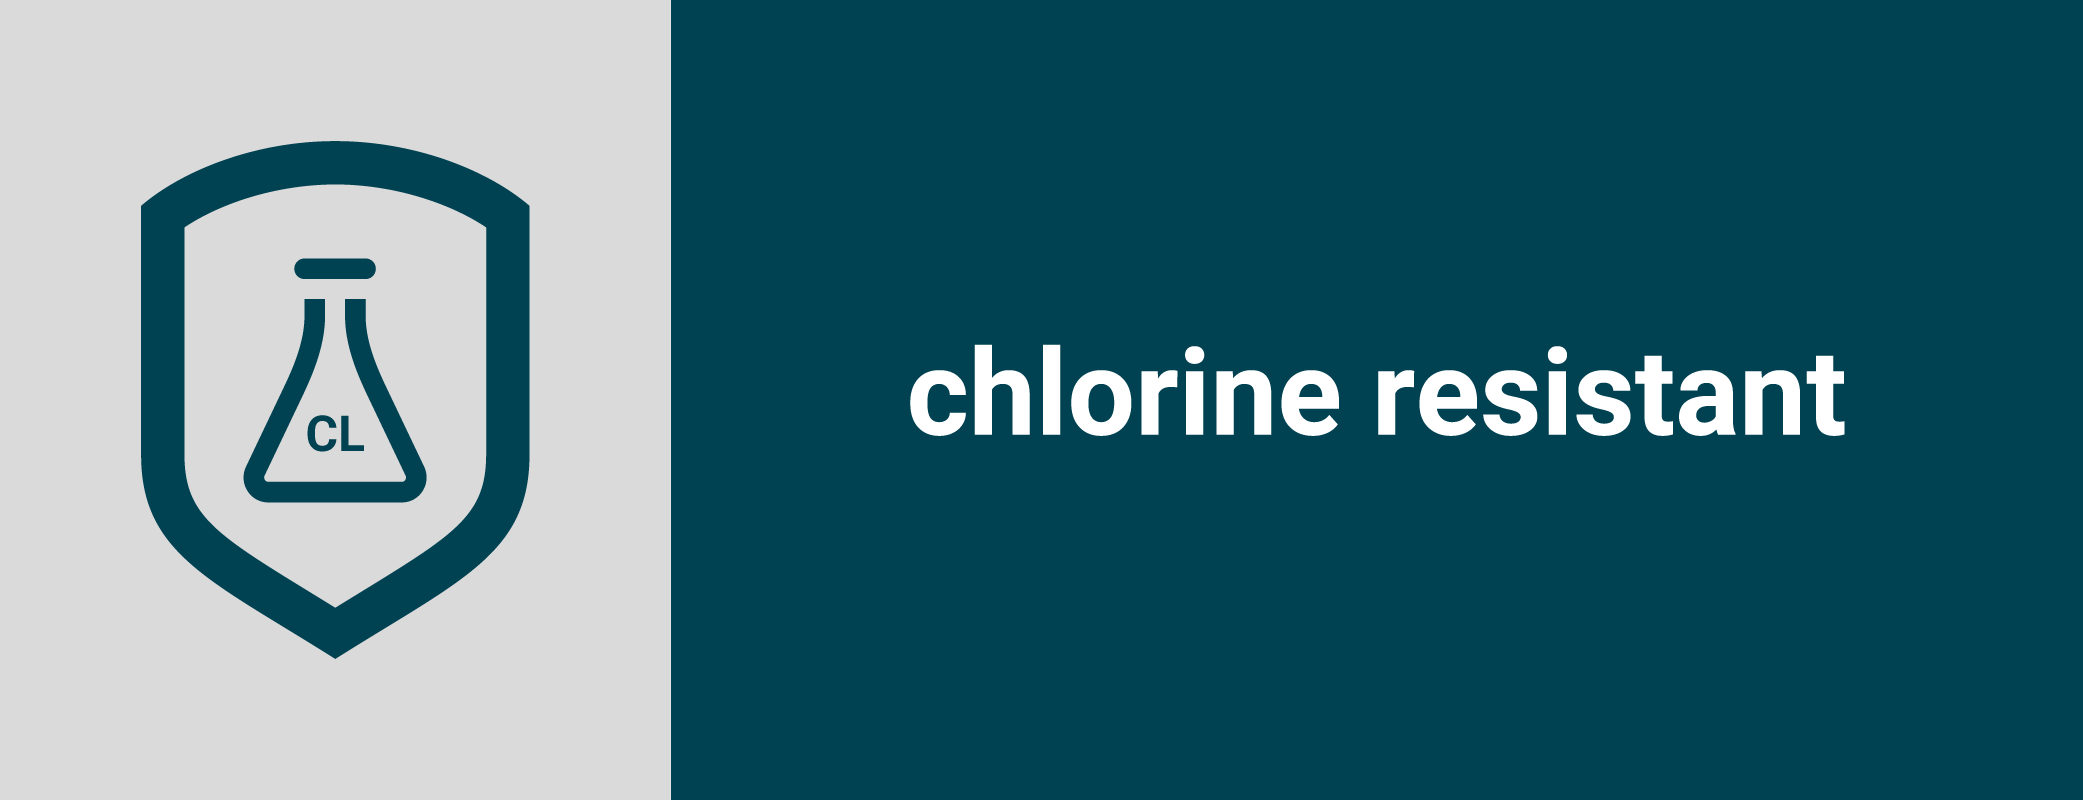 chlorine resistant